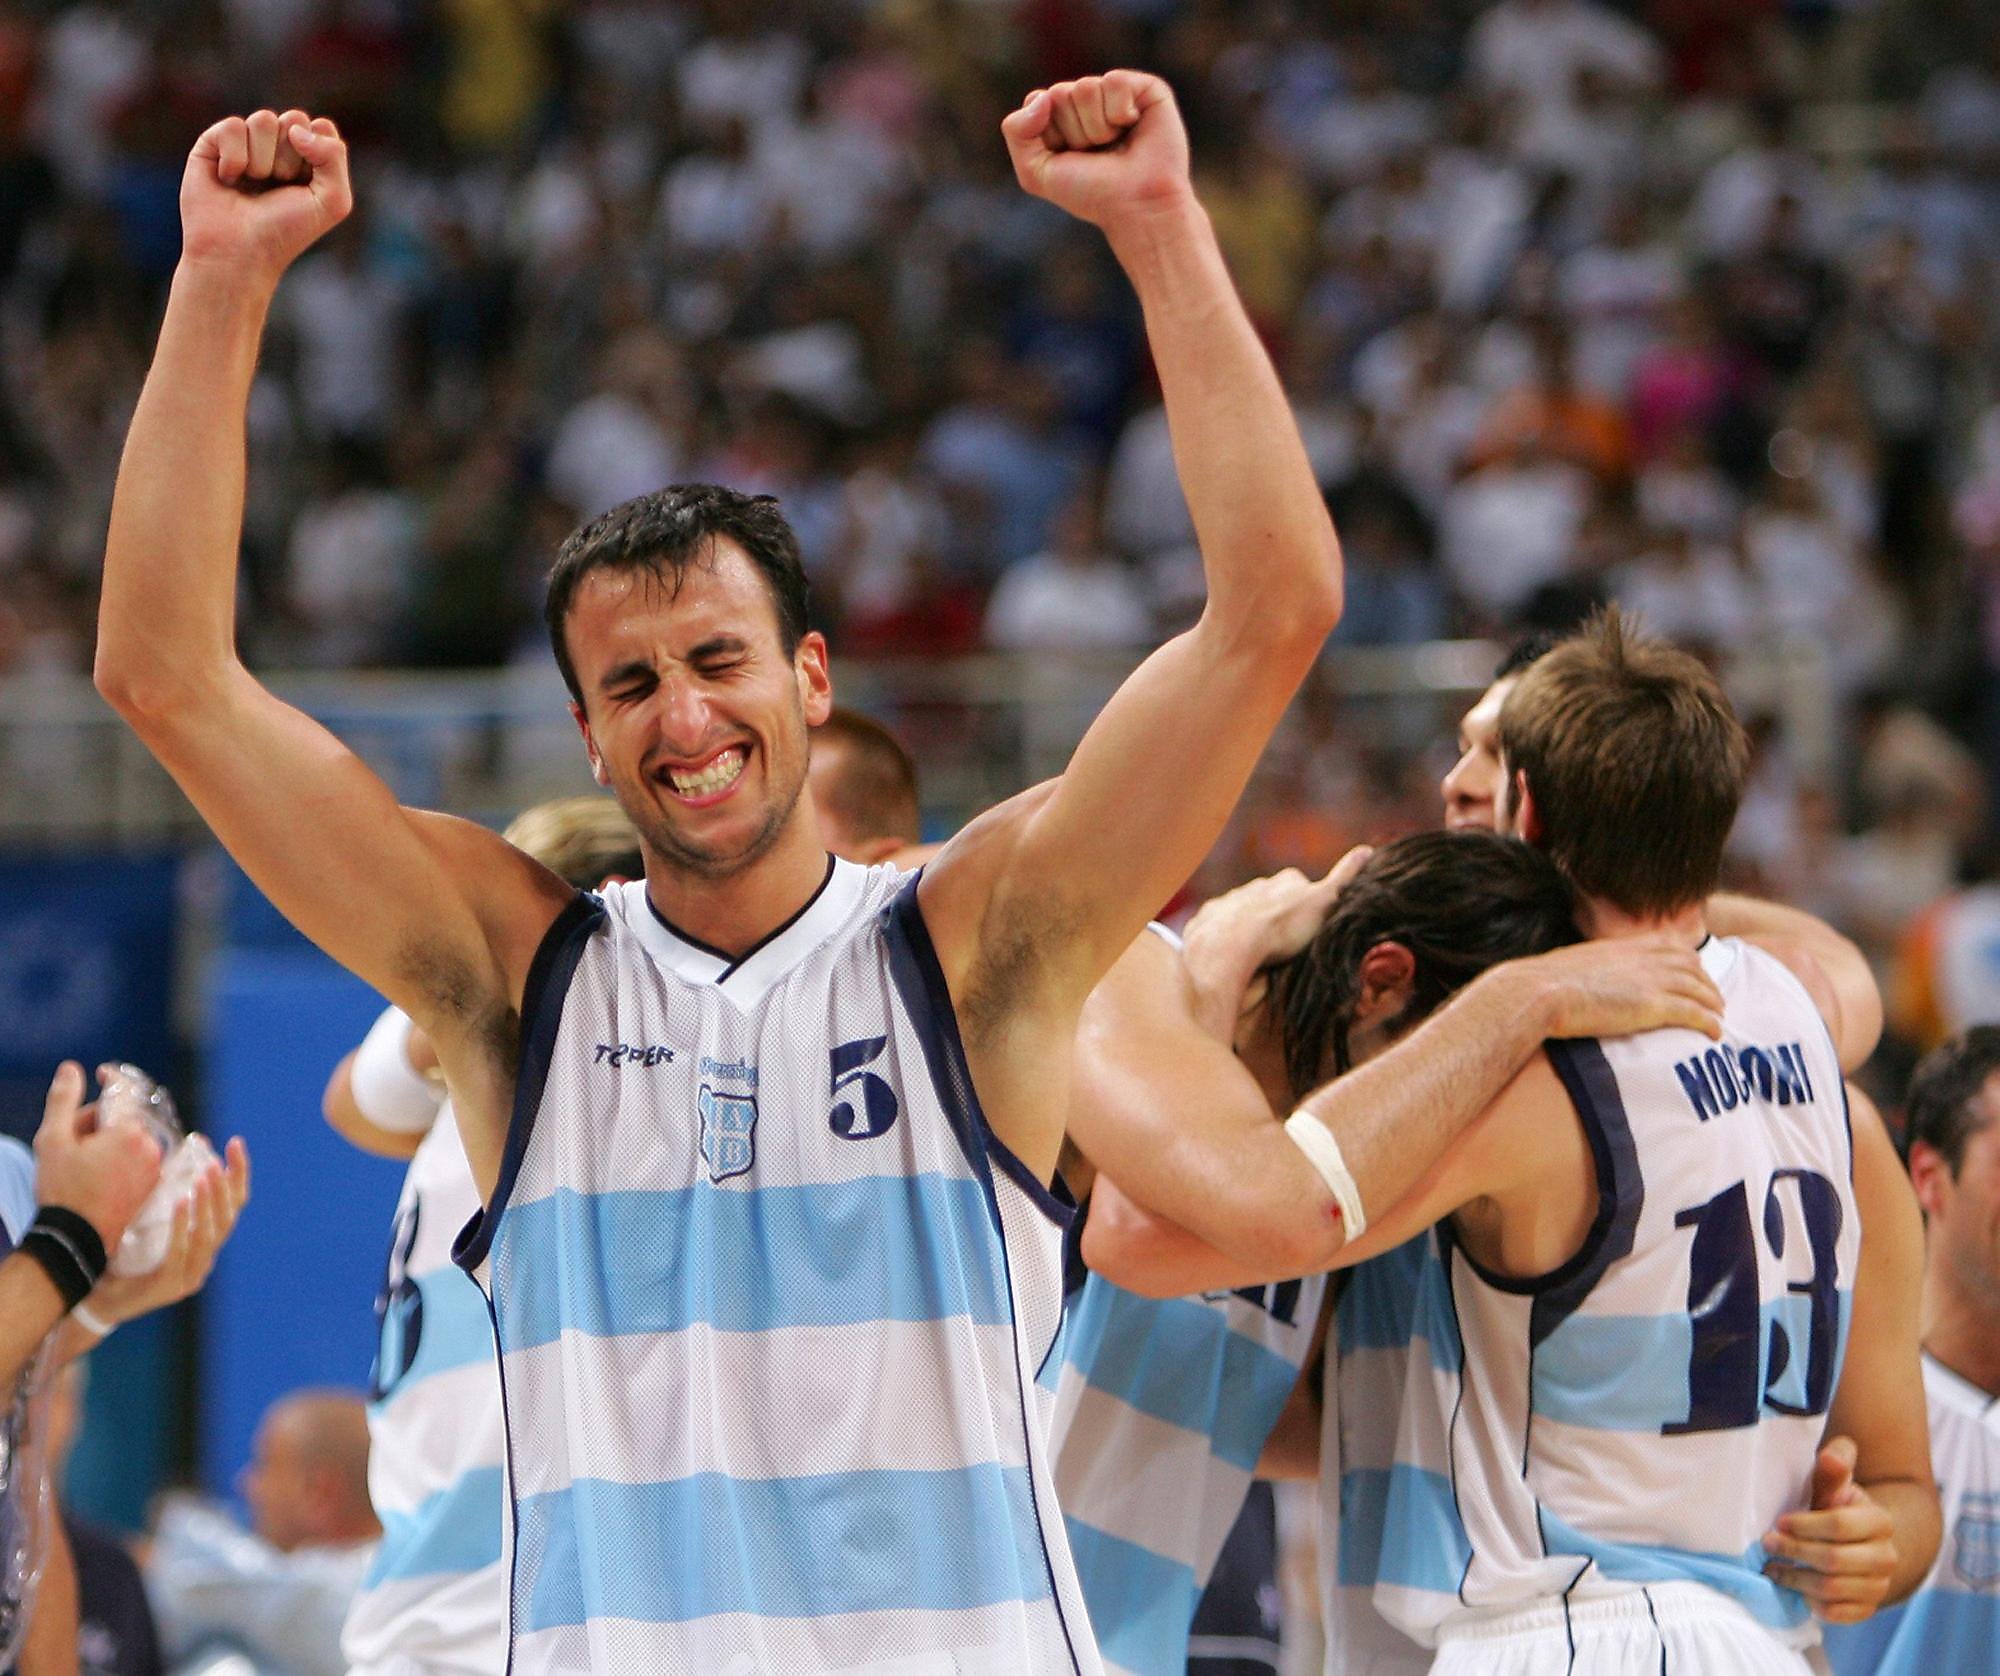 ginobili argentina basketball jersey